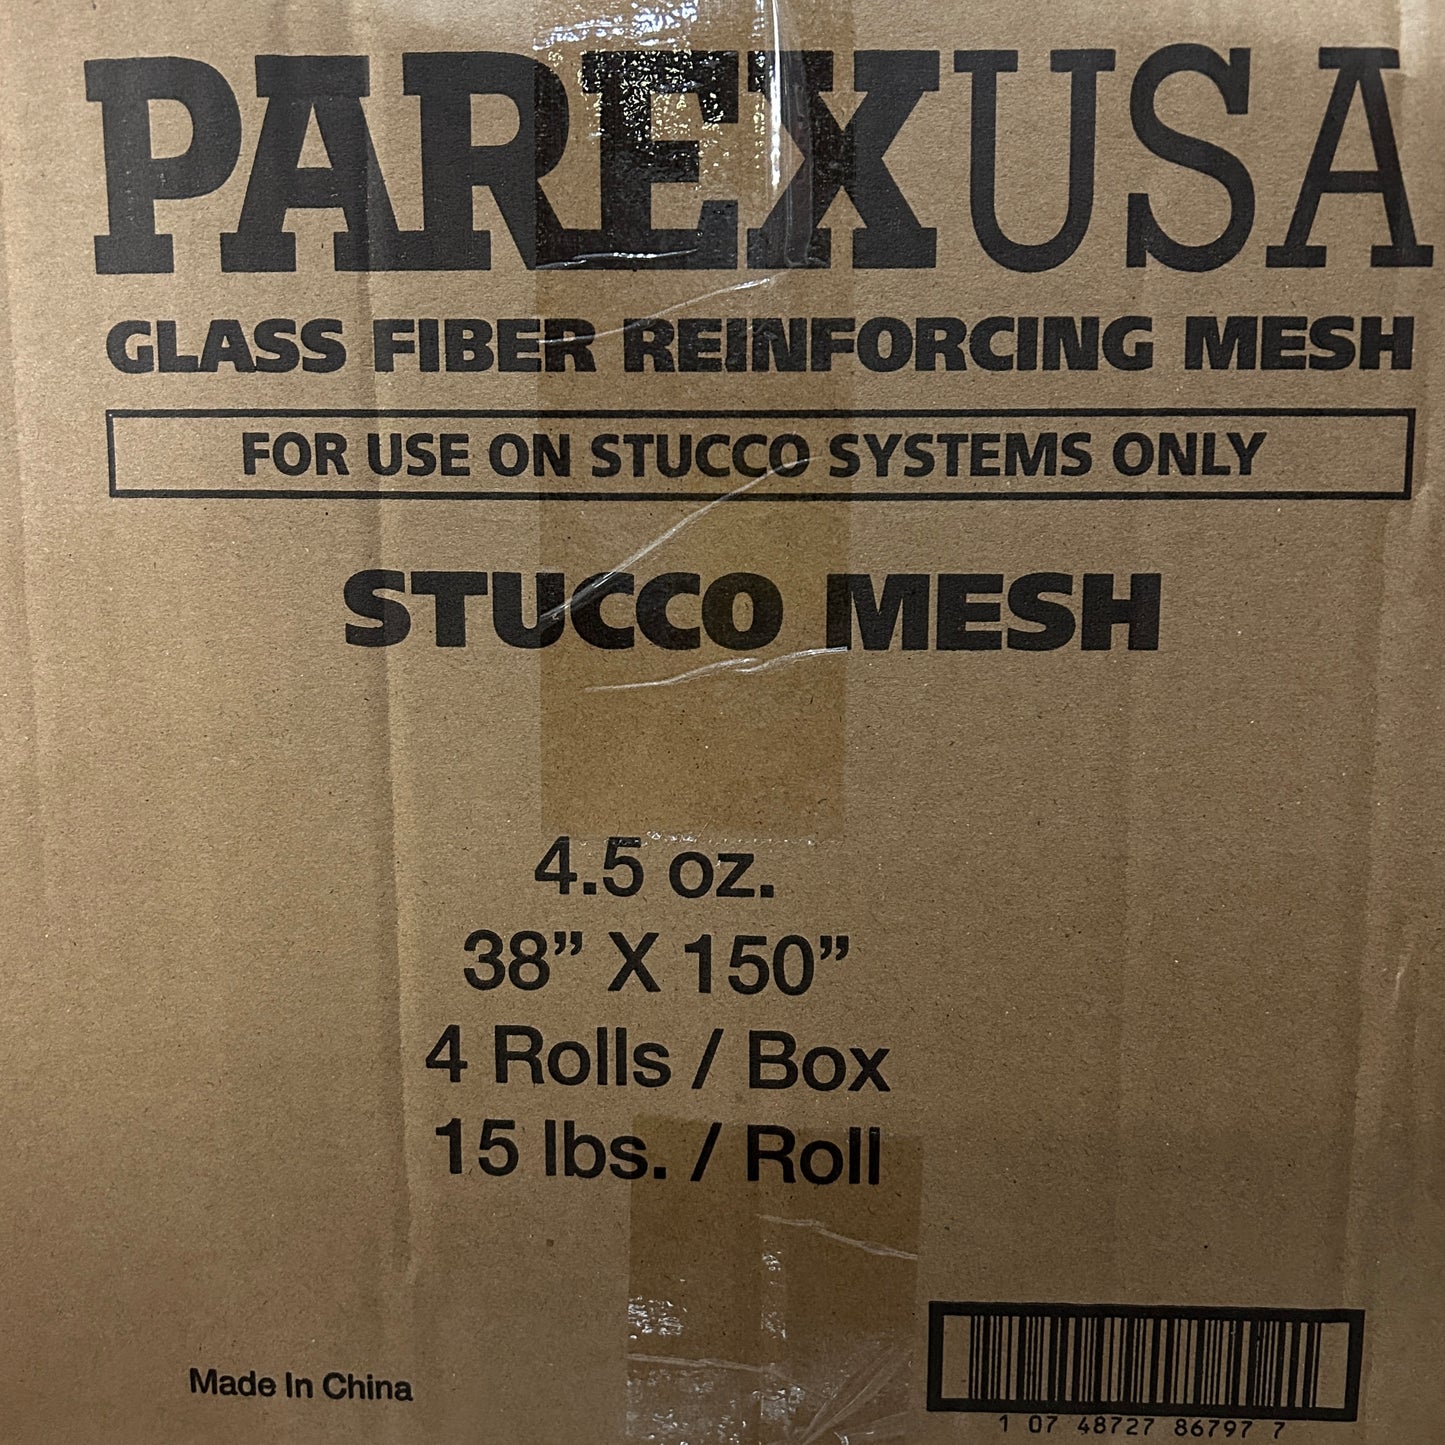 Case of 4 PAREXUSA Glass Fiber Reinforcing Mesh 38" x 150" (New)